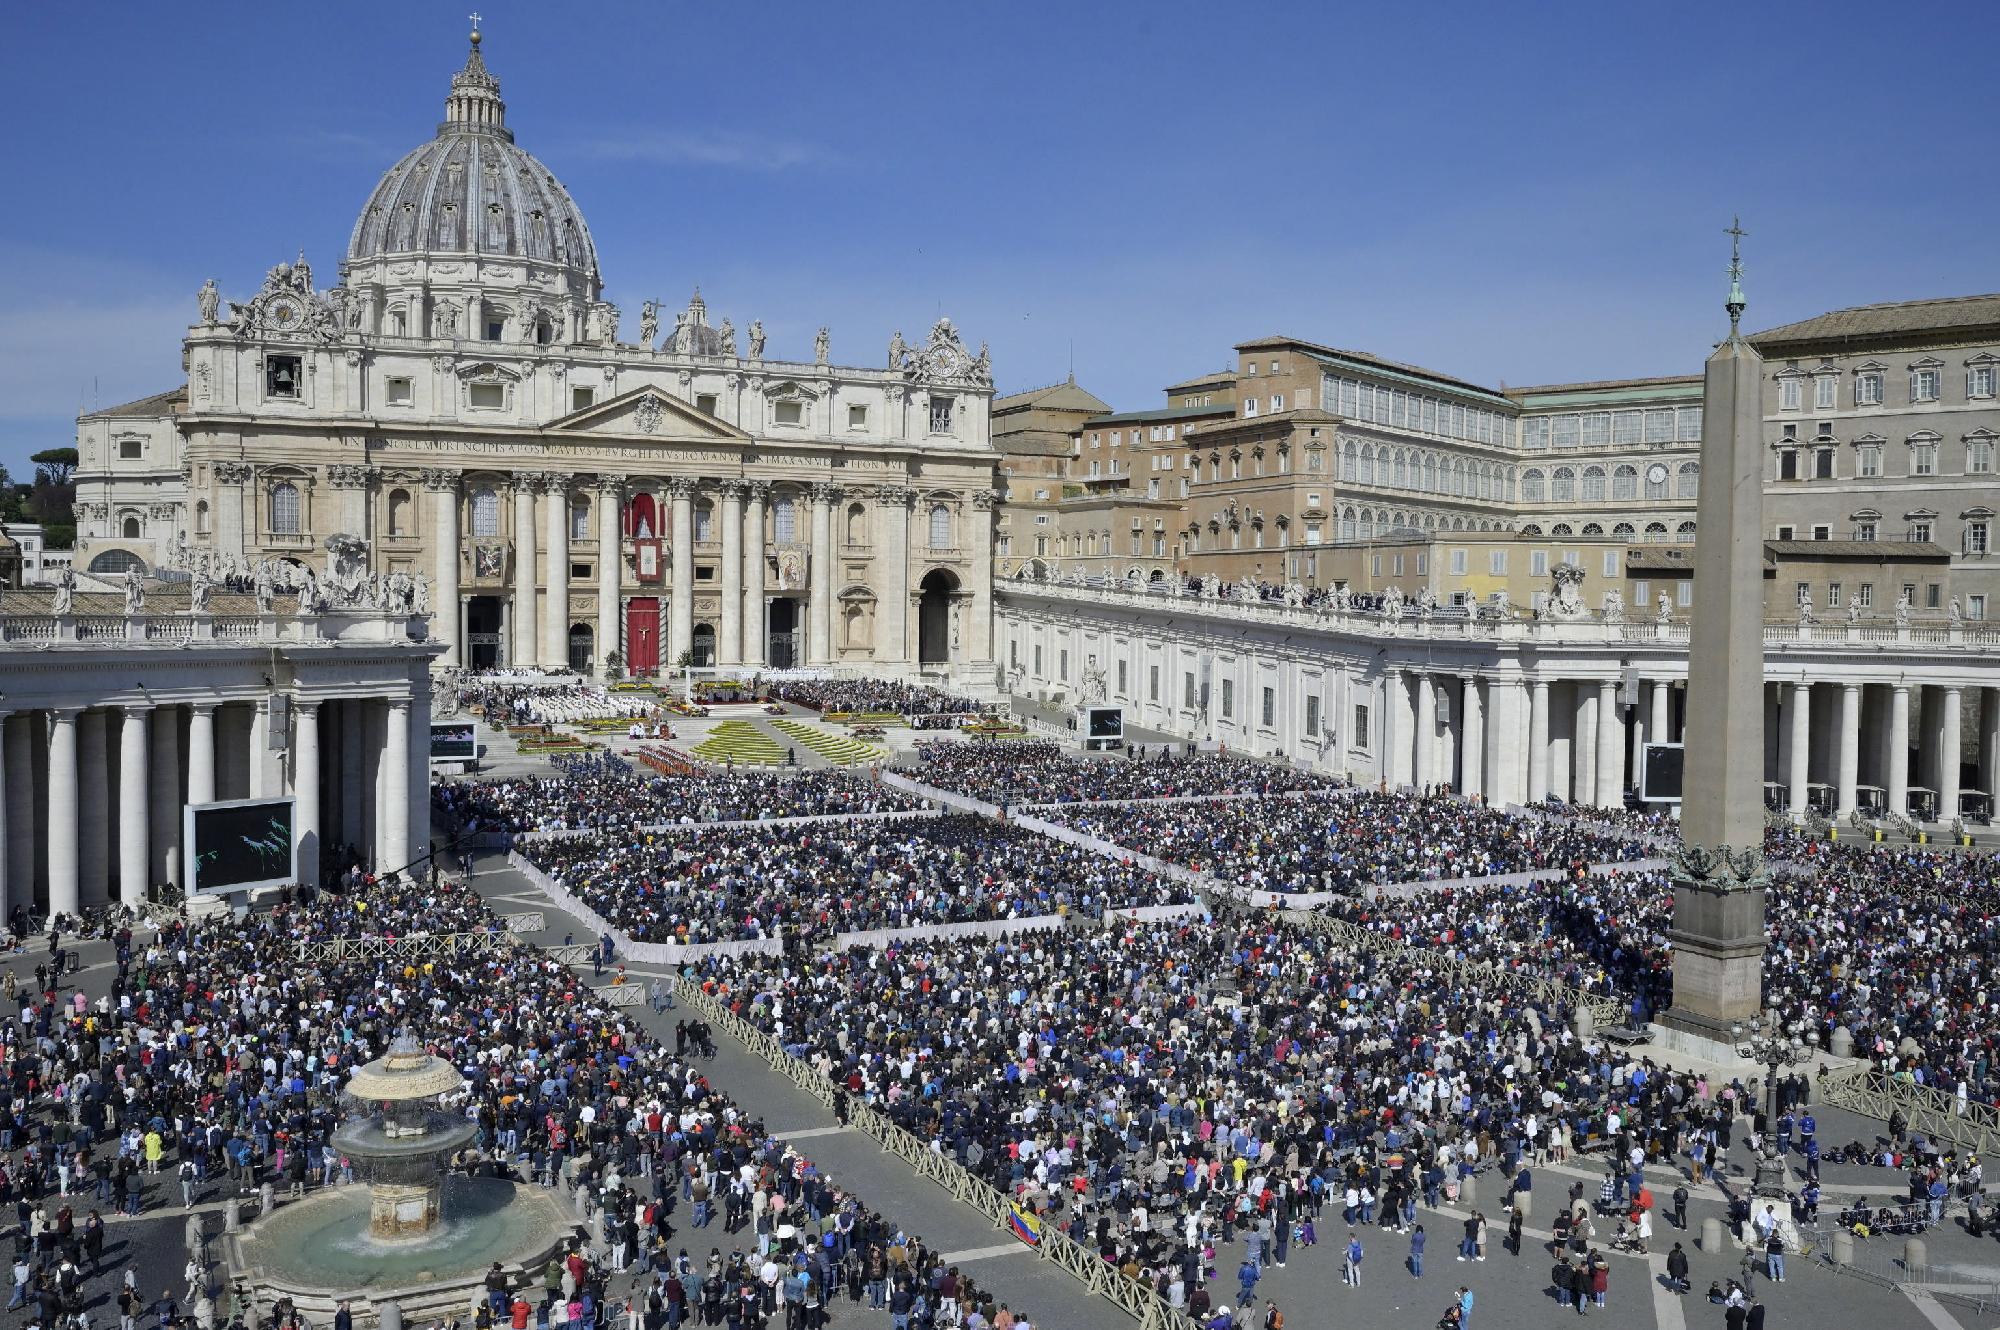 Húsvét a Vatikánban